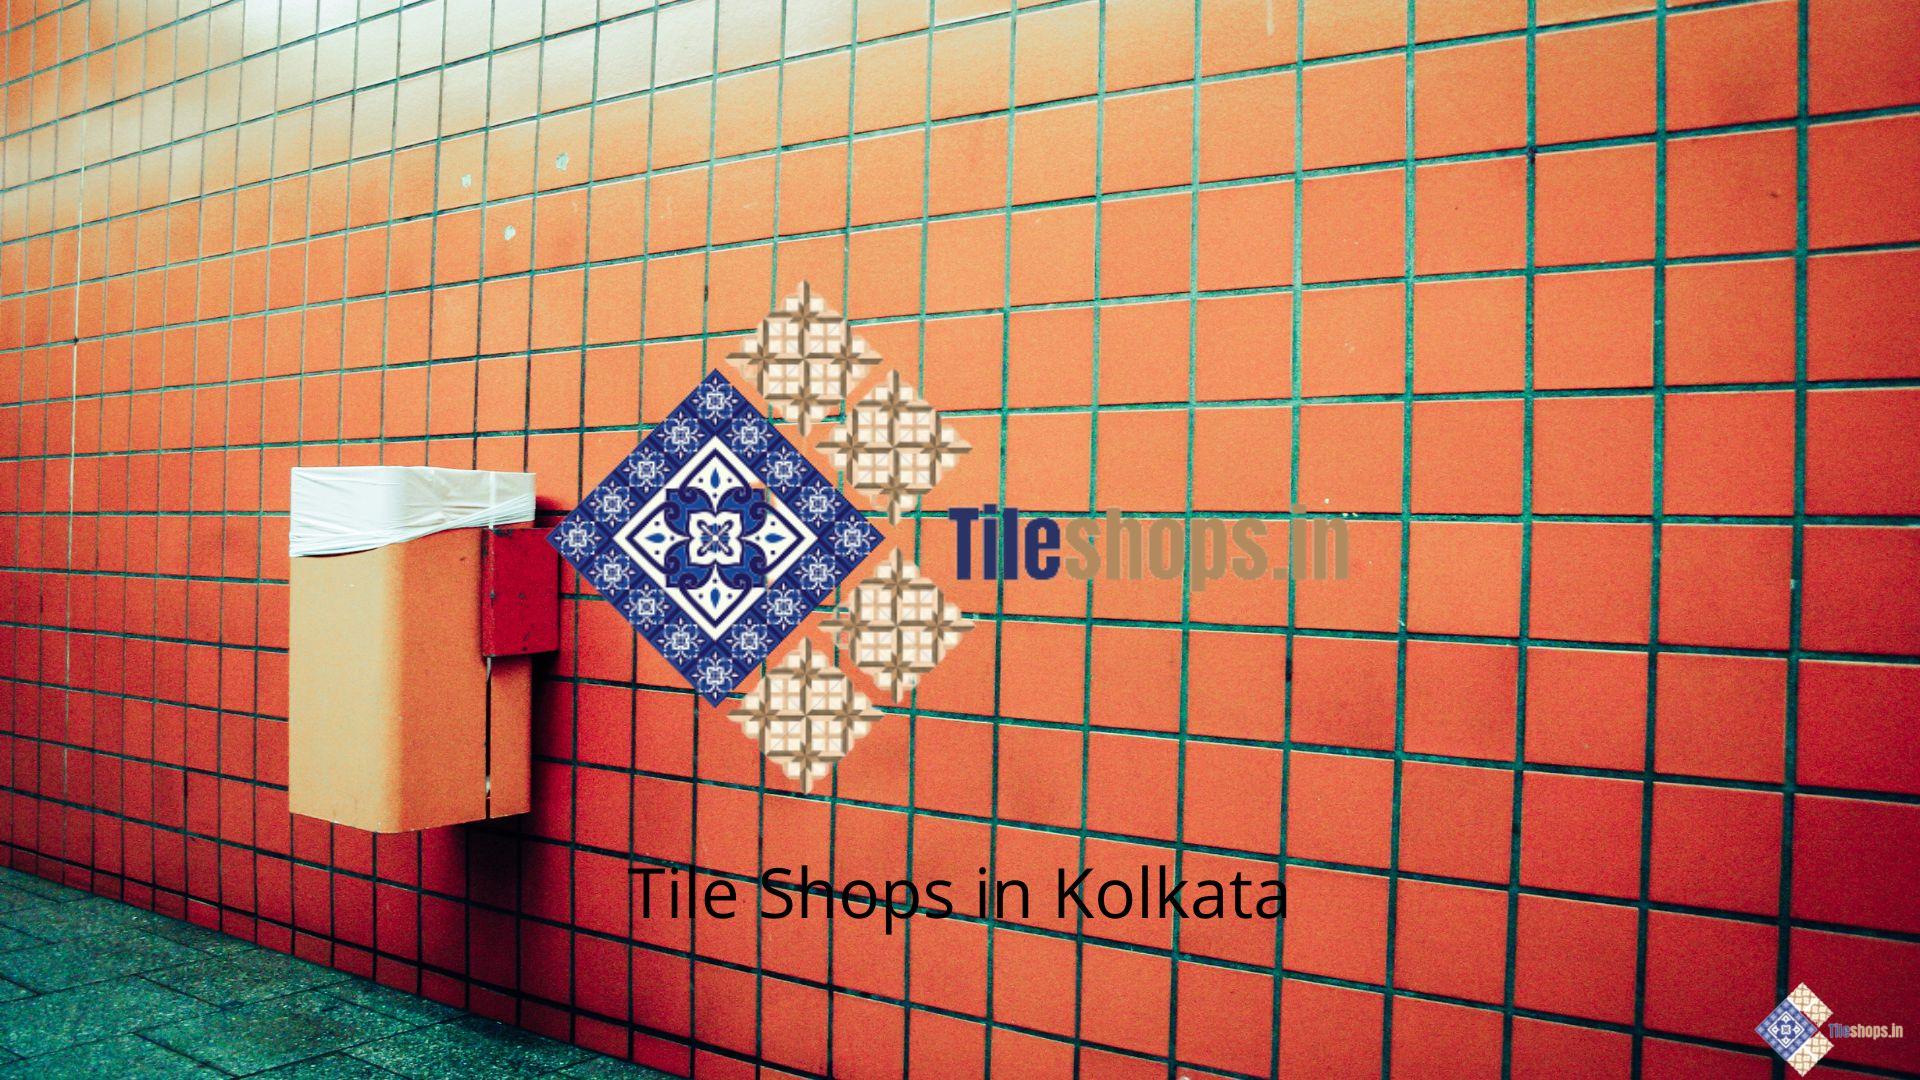 Tile Shops in Kolkata